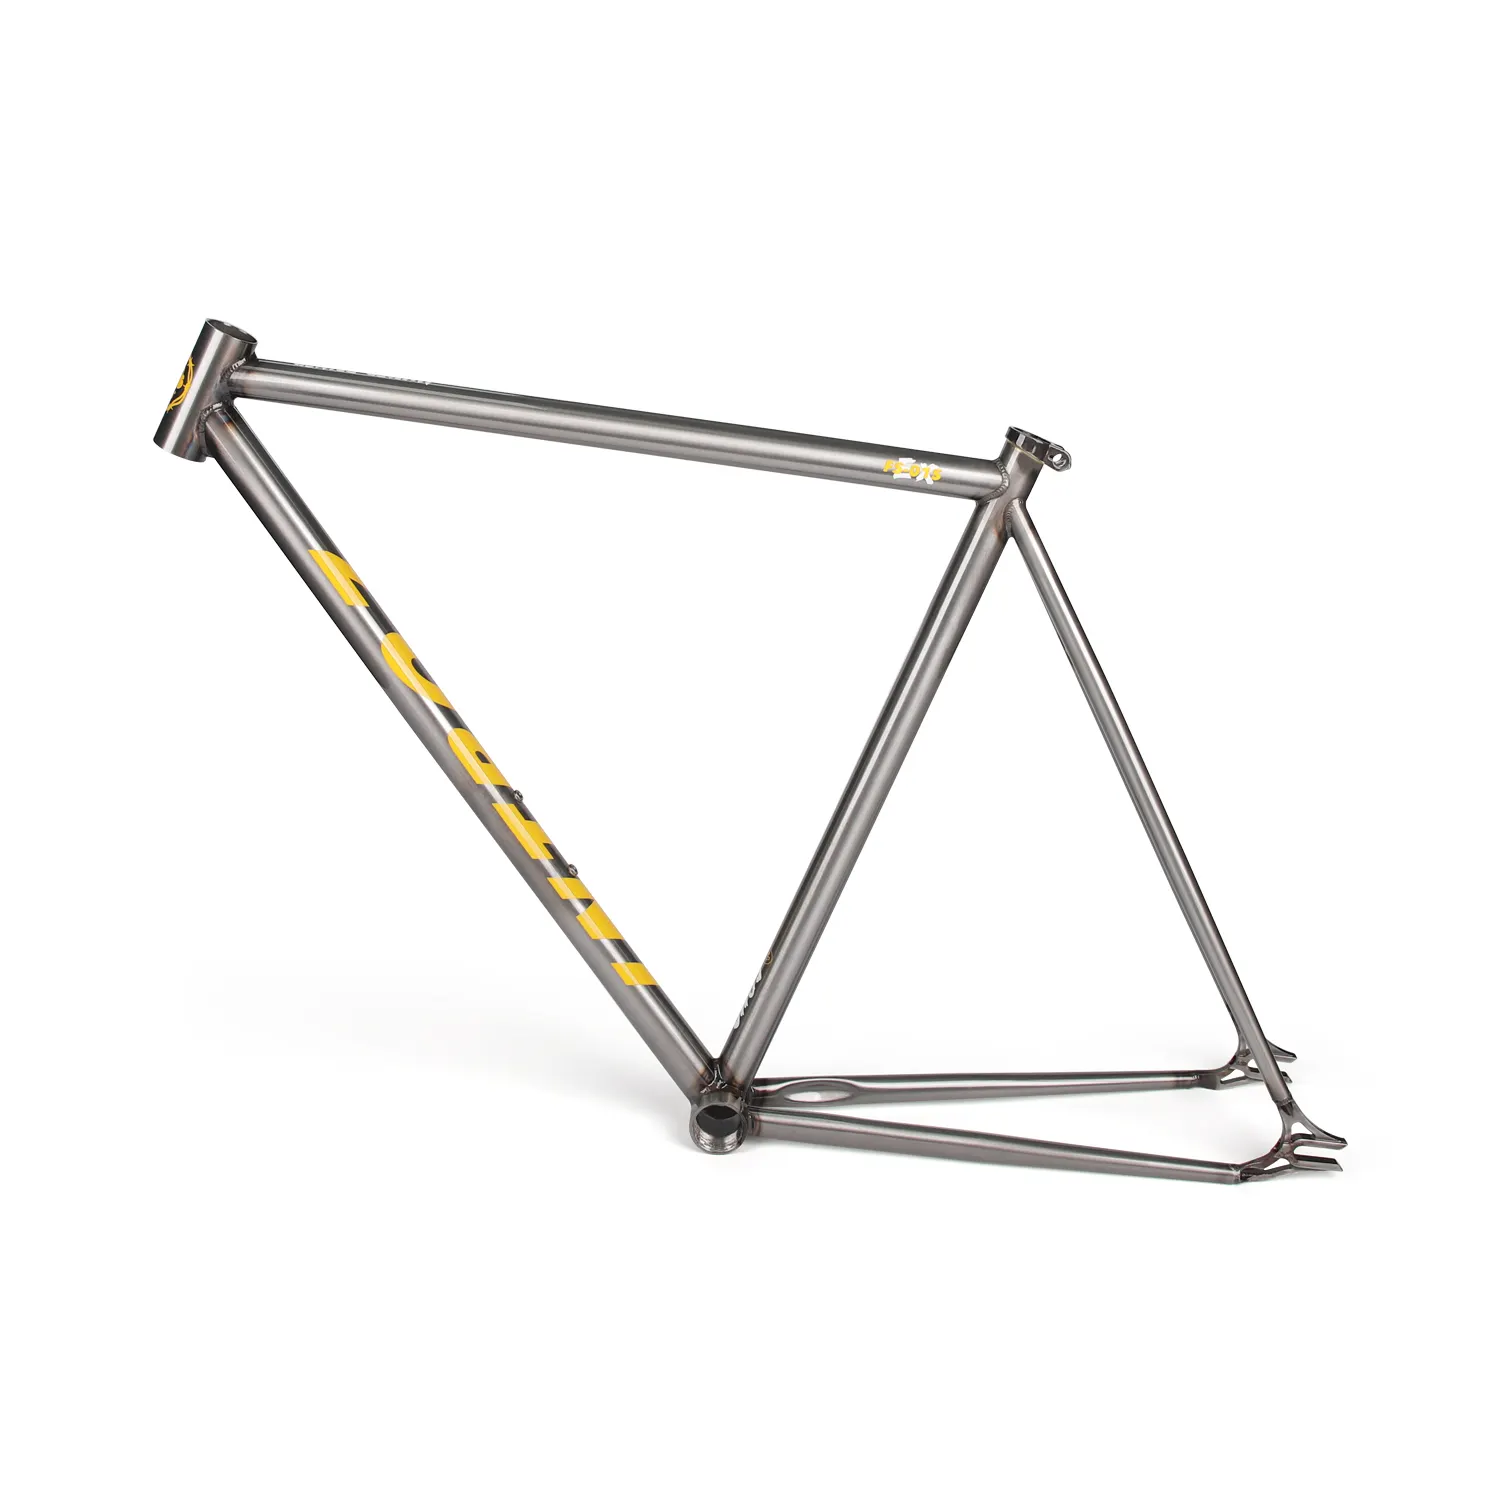 FM002 rangka sepeda baja, suku cadang sepeda untuk rangka sepeda gigi tetap 700C warna-warni rangka baja karbon tinggi dengan garpu